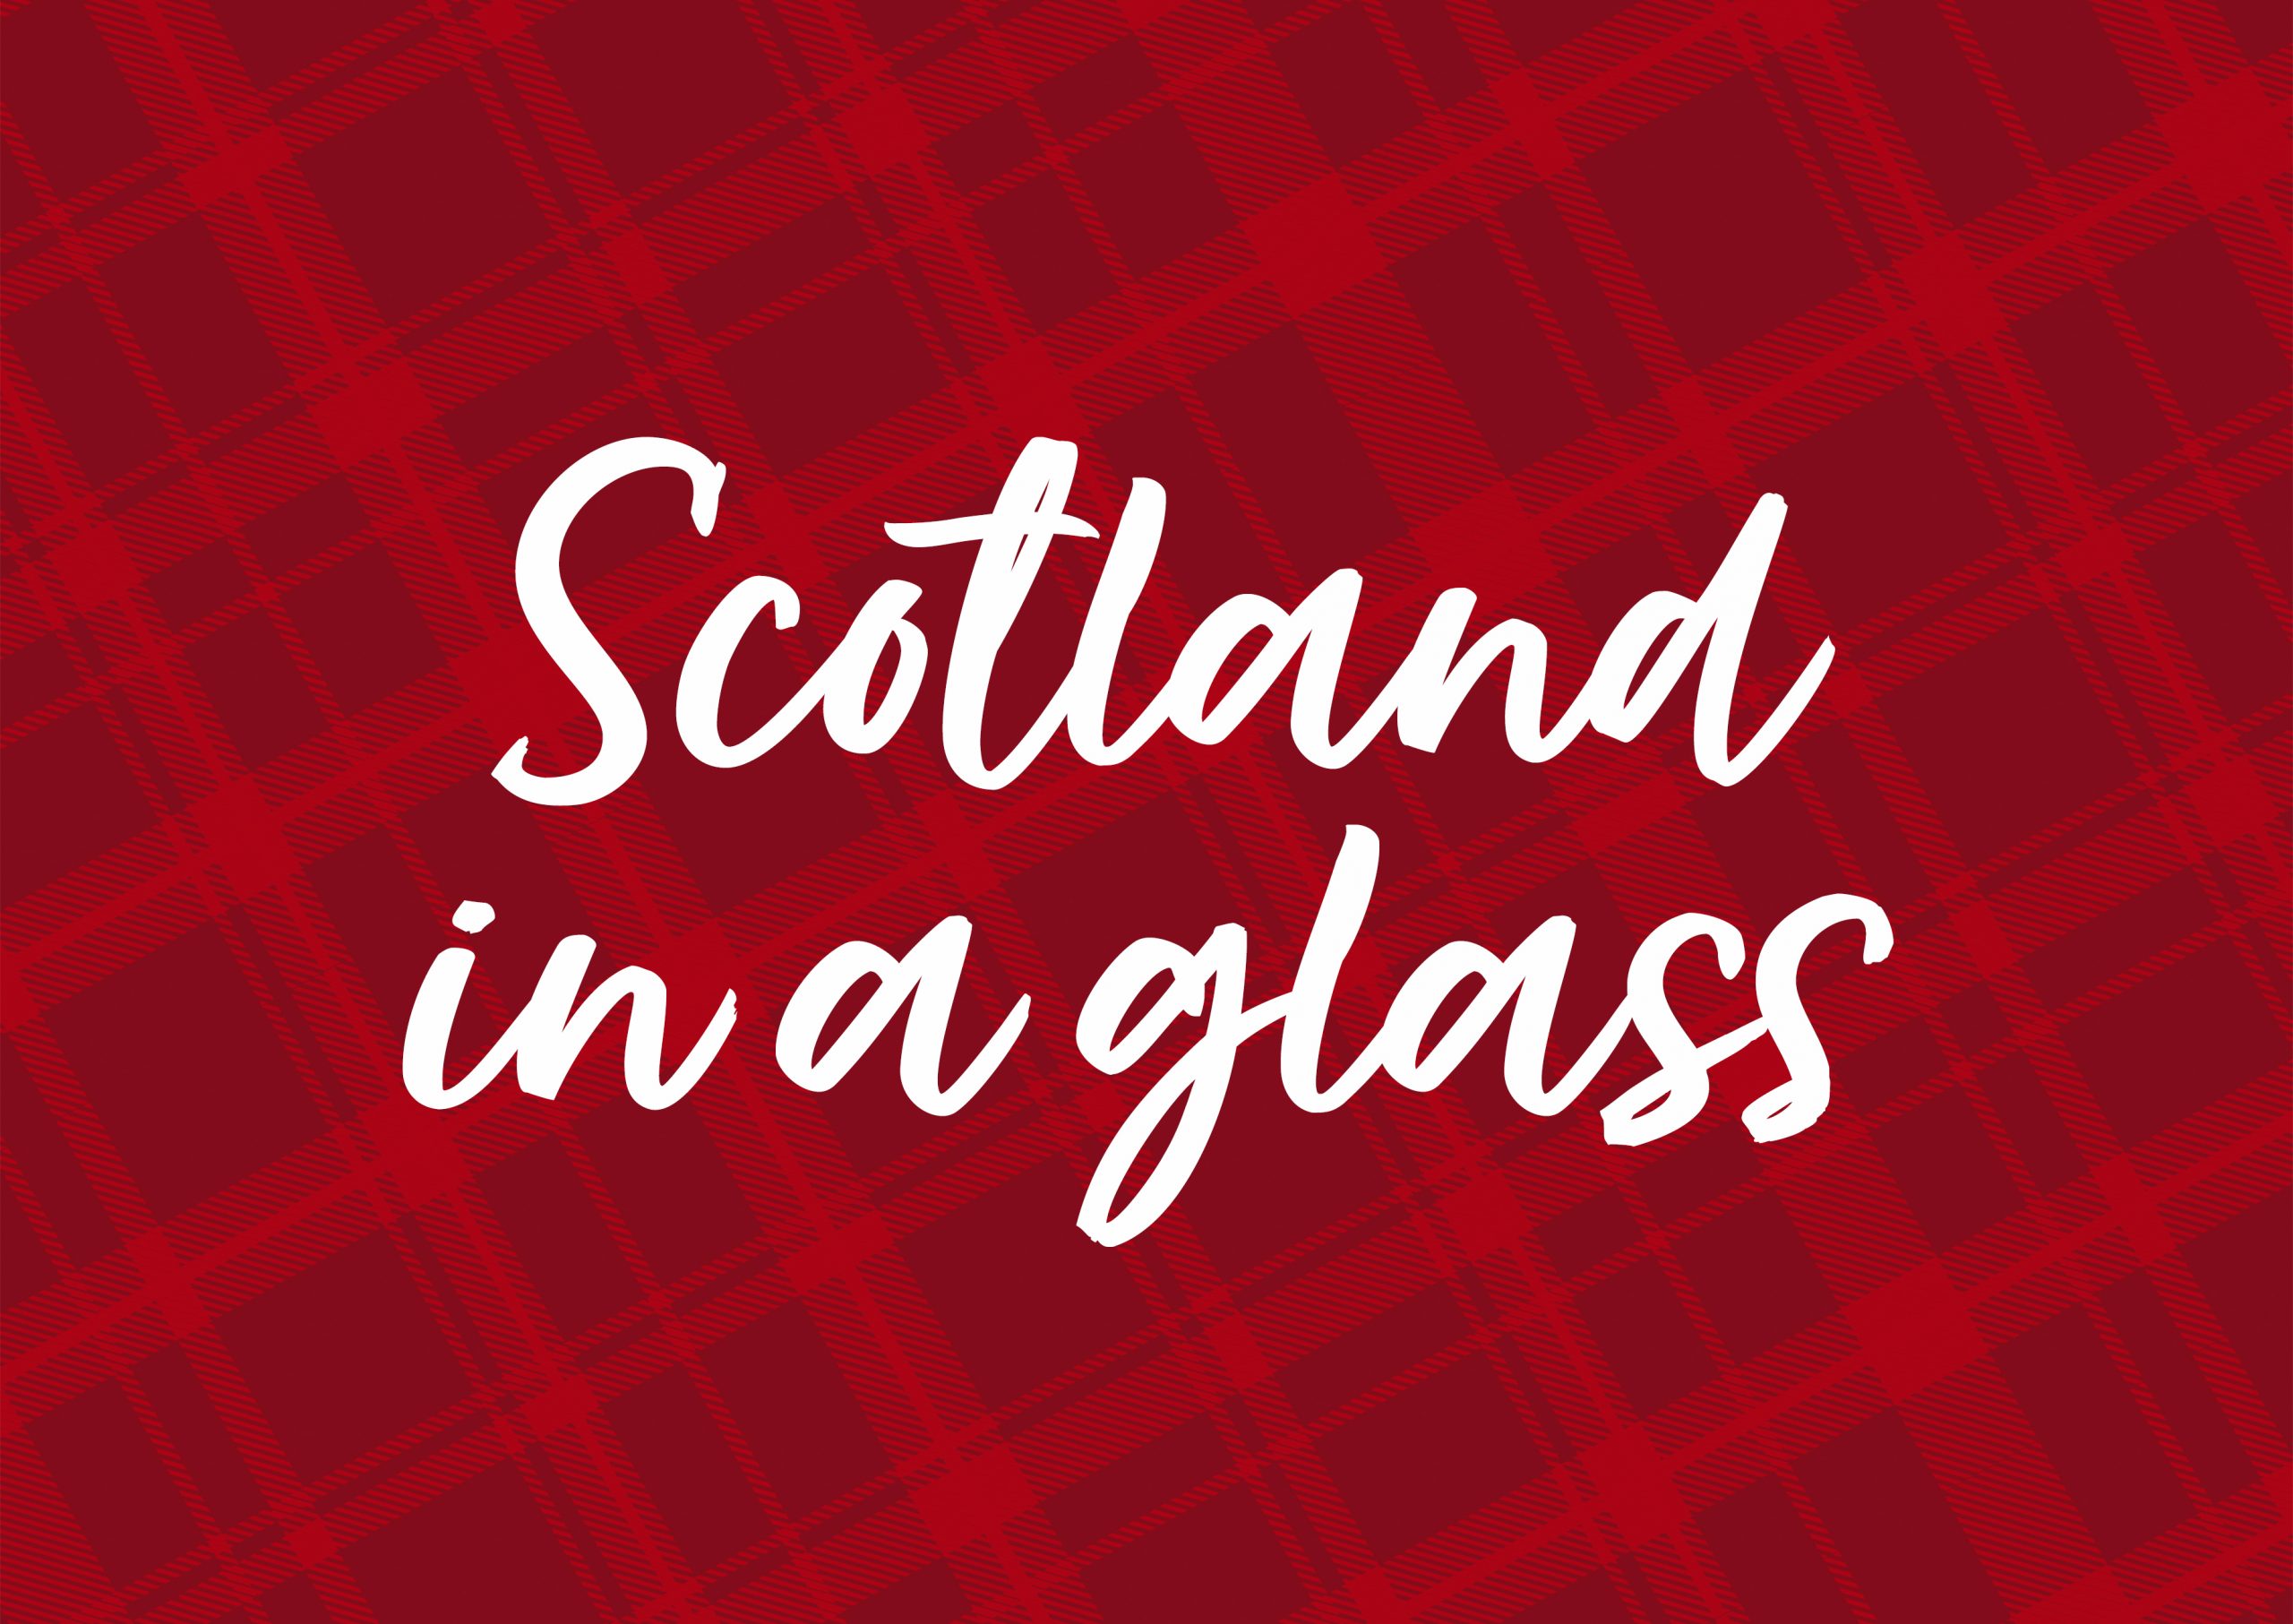 Scotland in a glass Sir Edward's Bardinet